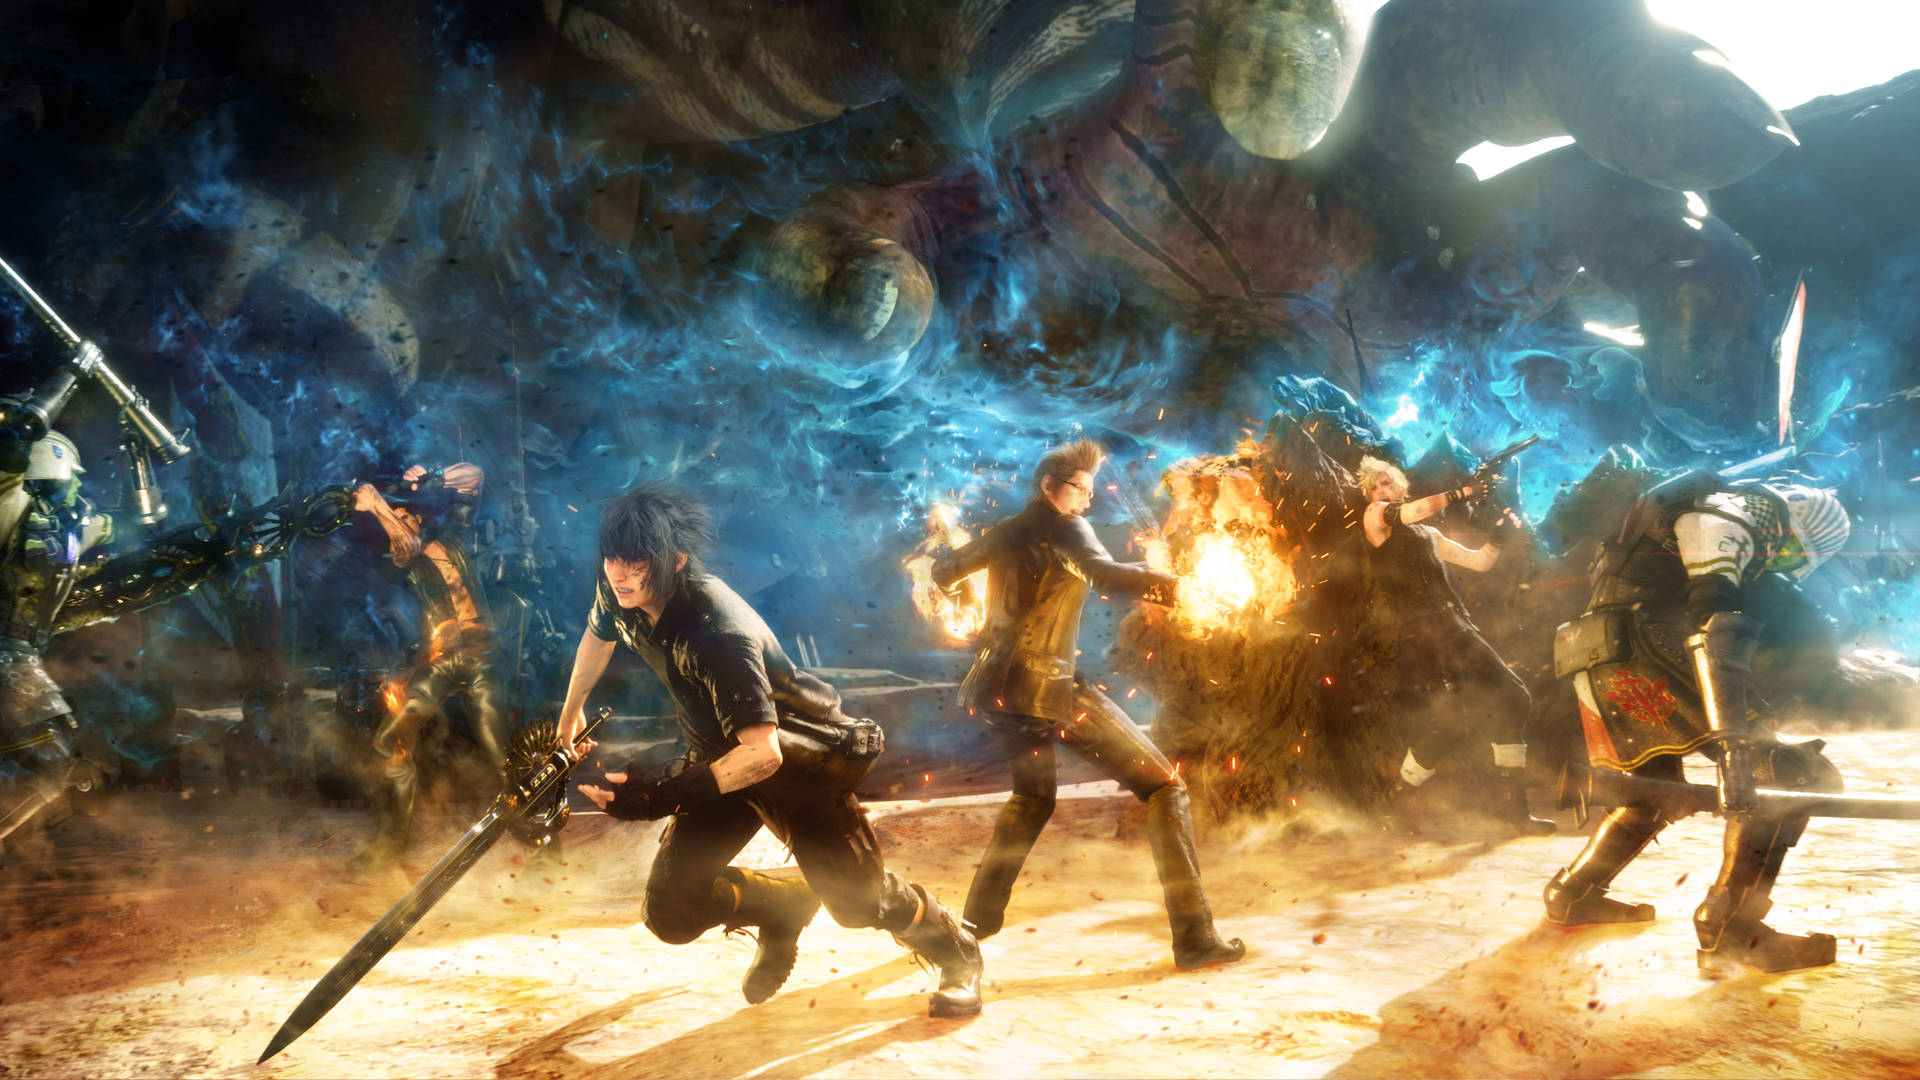 Battle Scene In Final Fantasy Xv